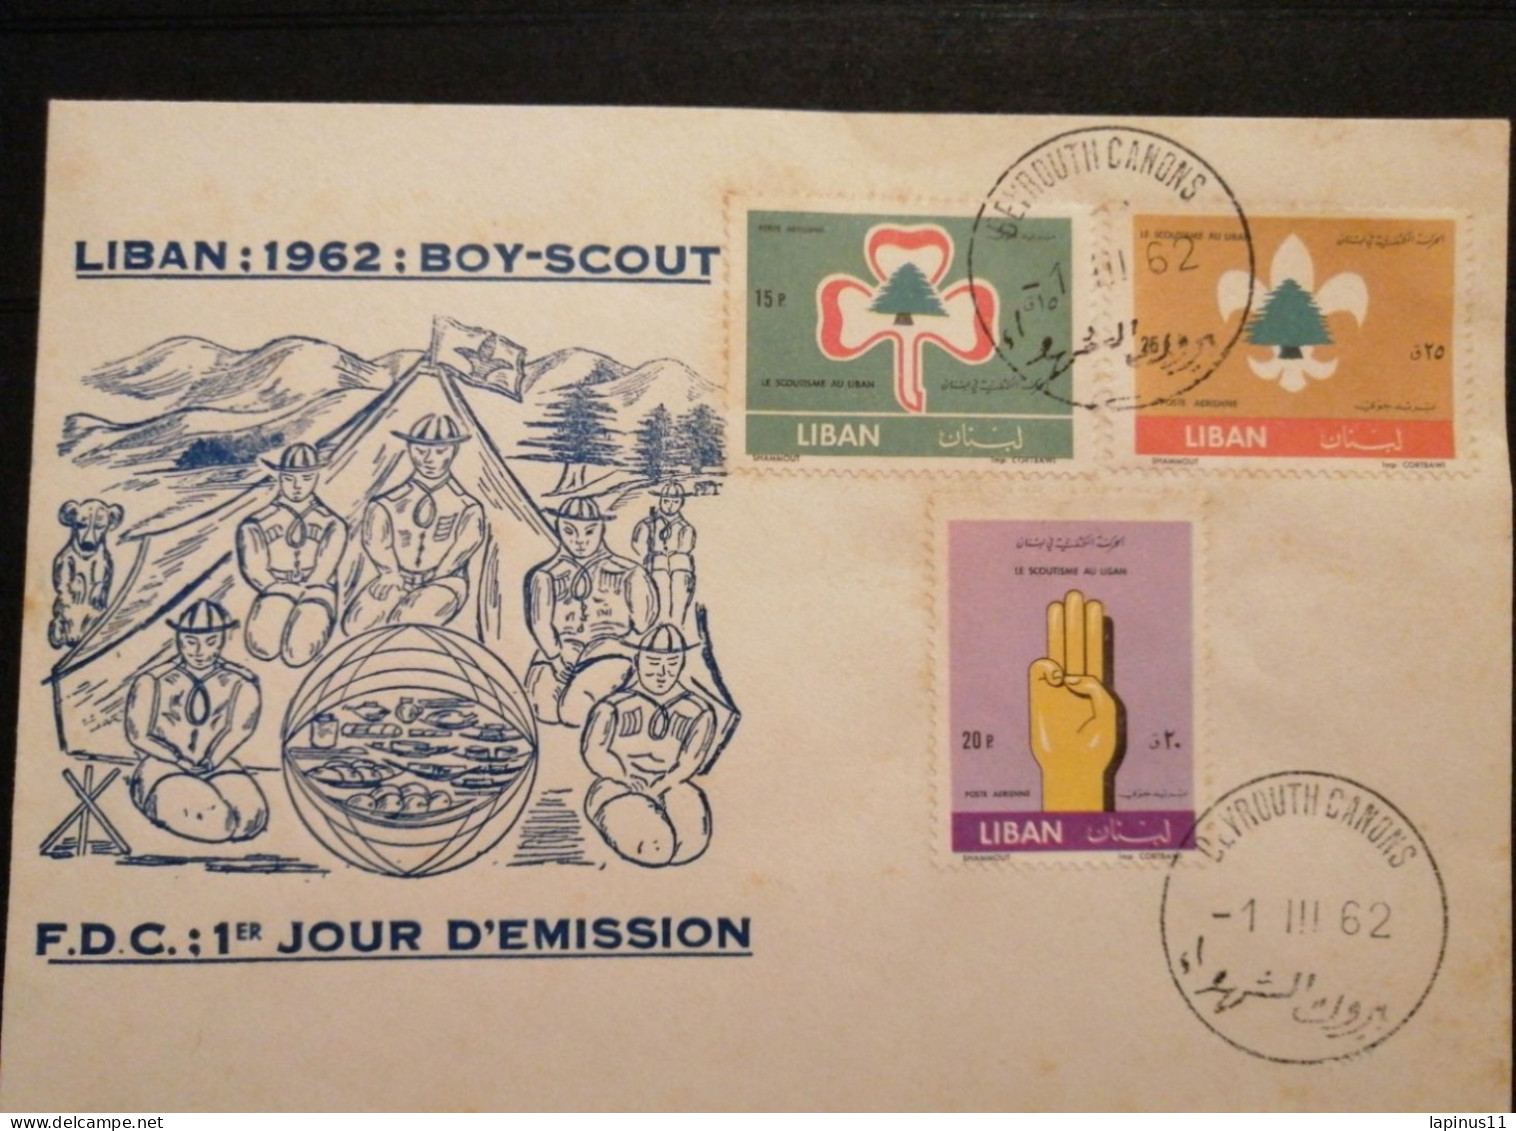 Liban Lebanon  Boy_ Scout 1962 FDC - Lebanon